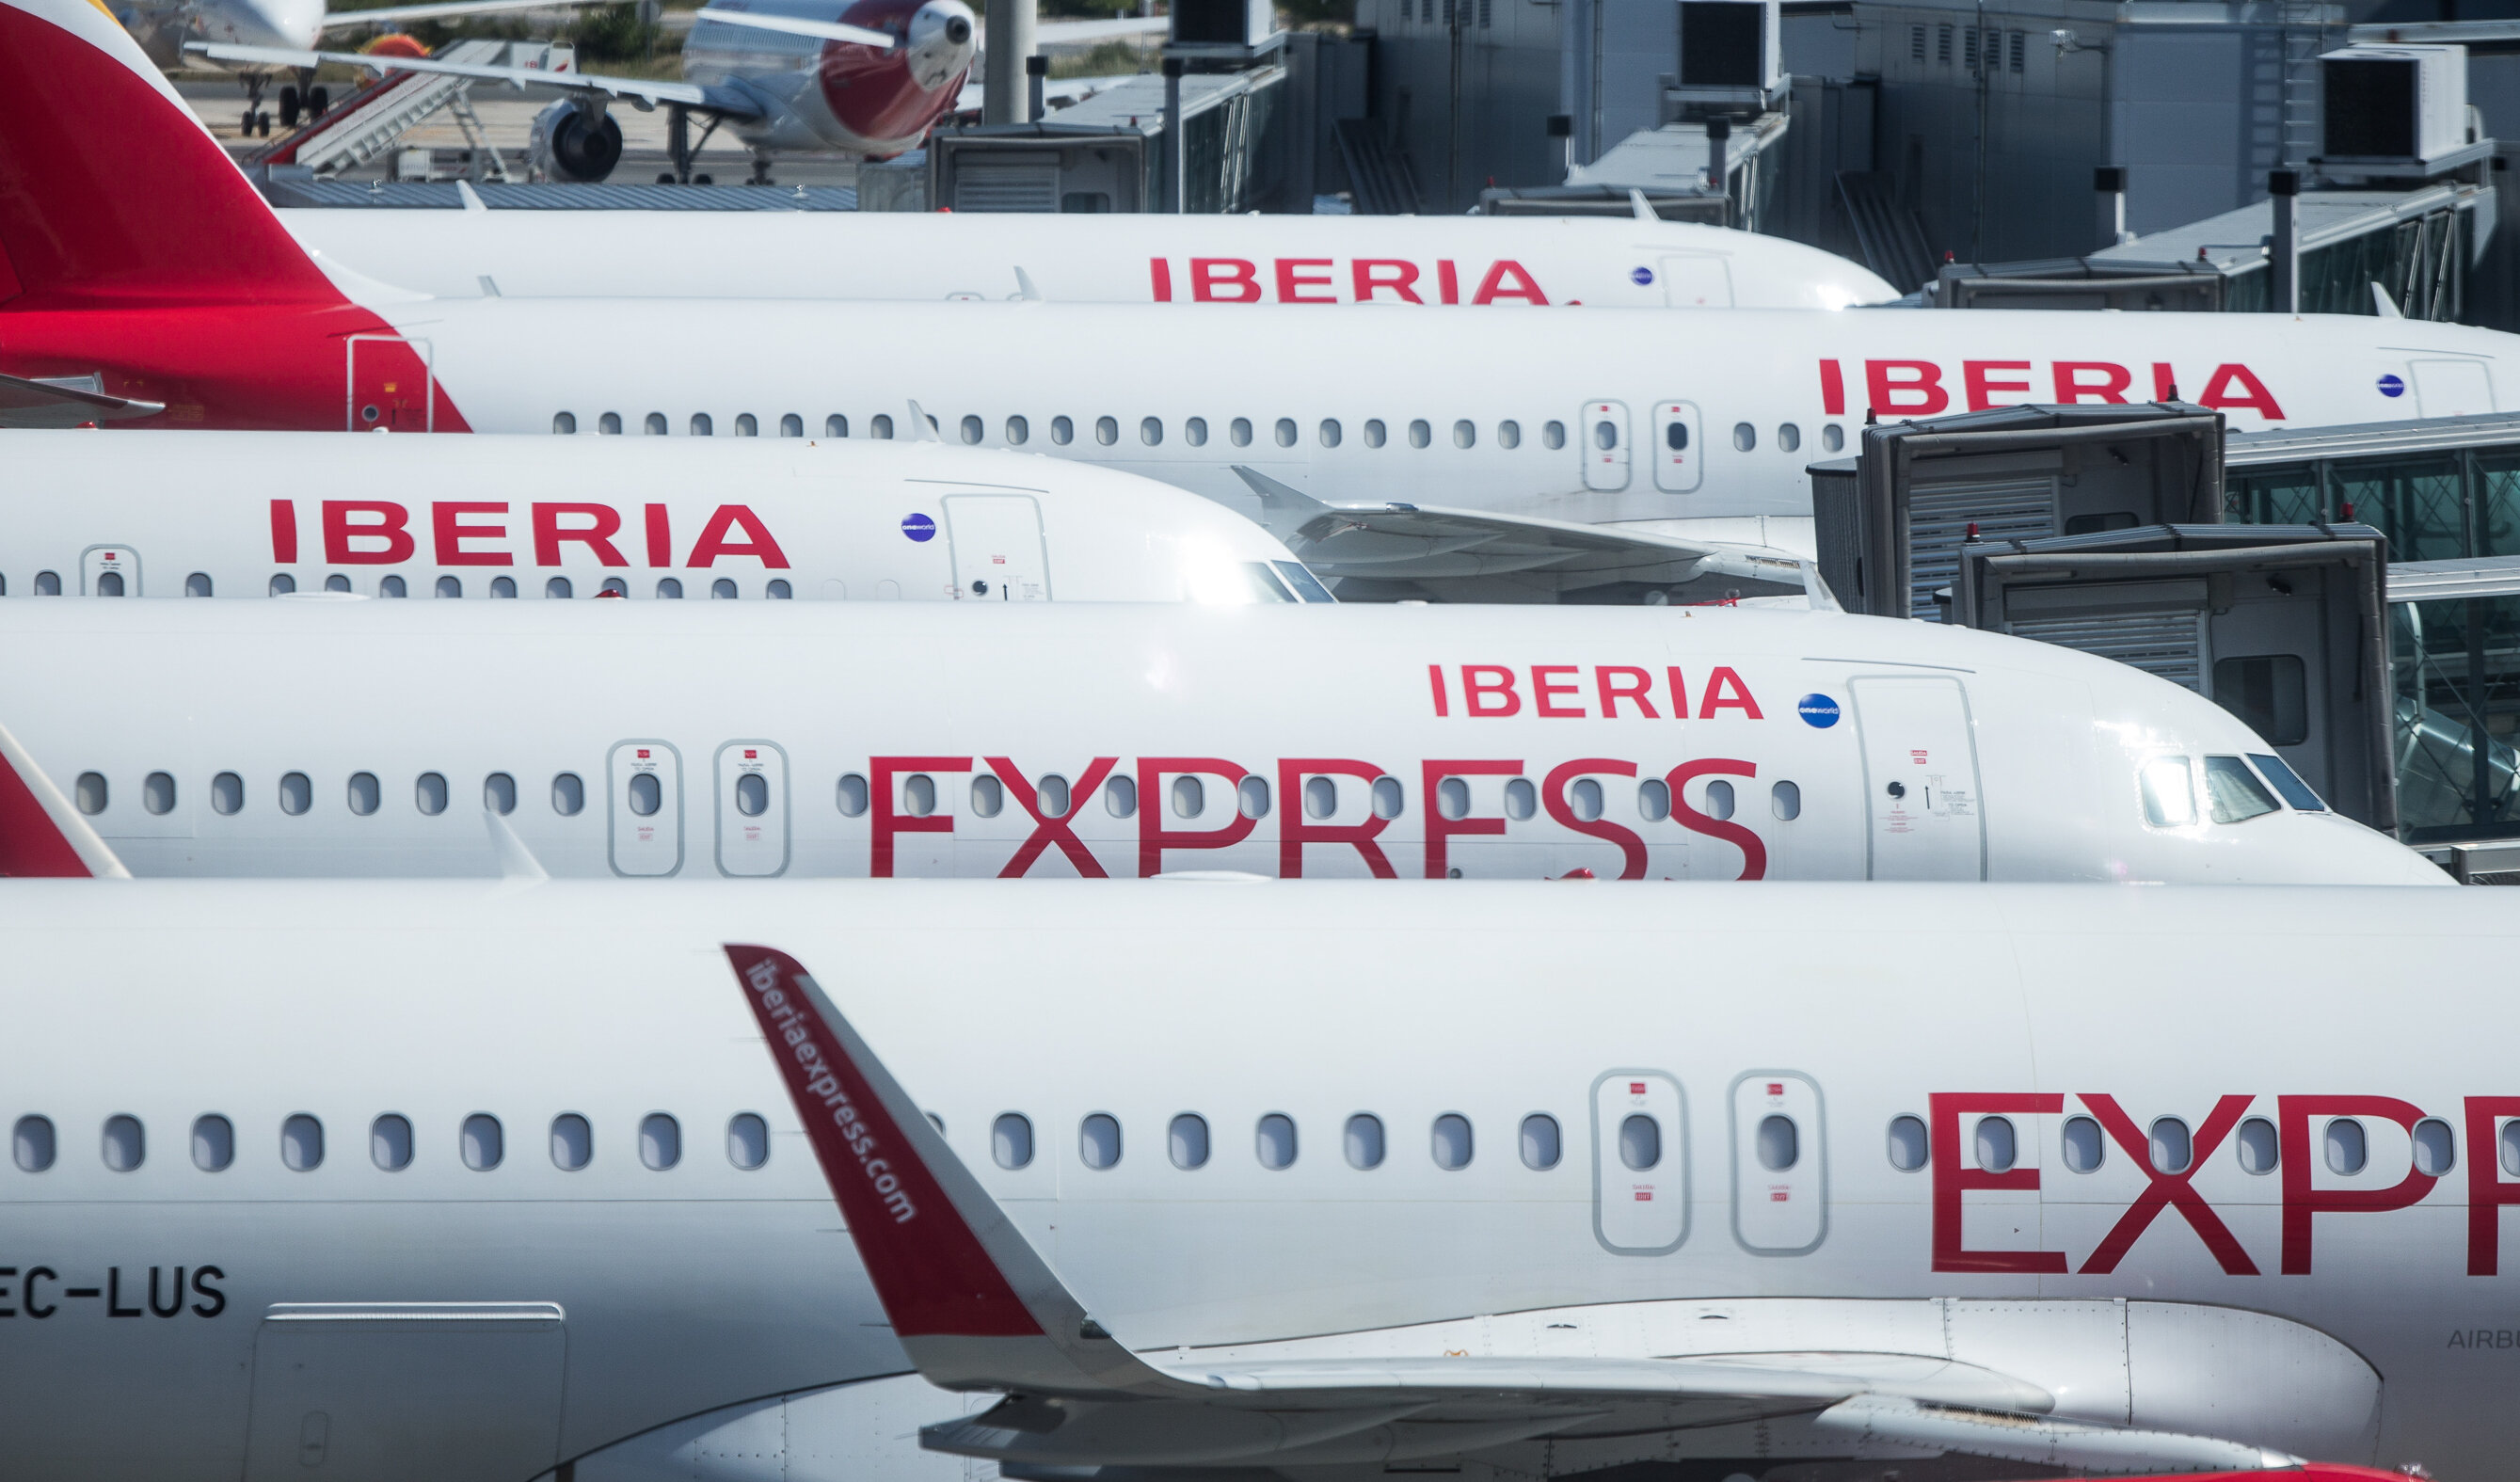 Compania aeriană Iberia oferă pasagerilor teste Covid la preț preferențial